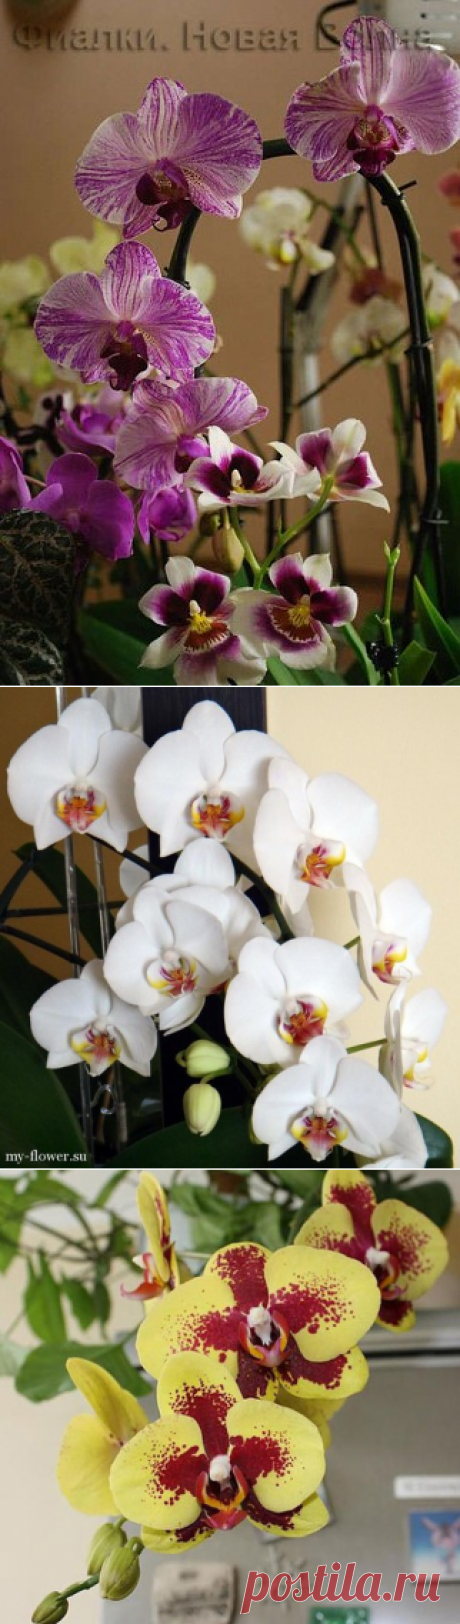 Ухаживаем за фаленопсисом (орхидеями) круглый год, ПРАВИЛЬНО.